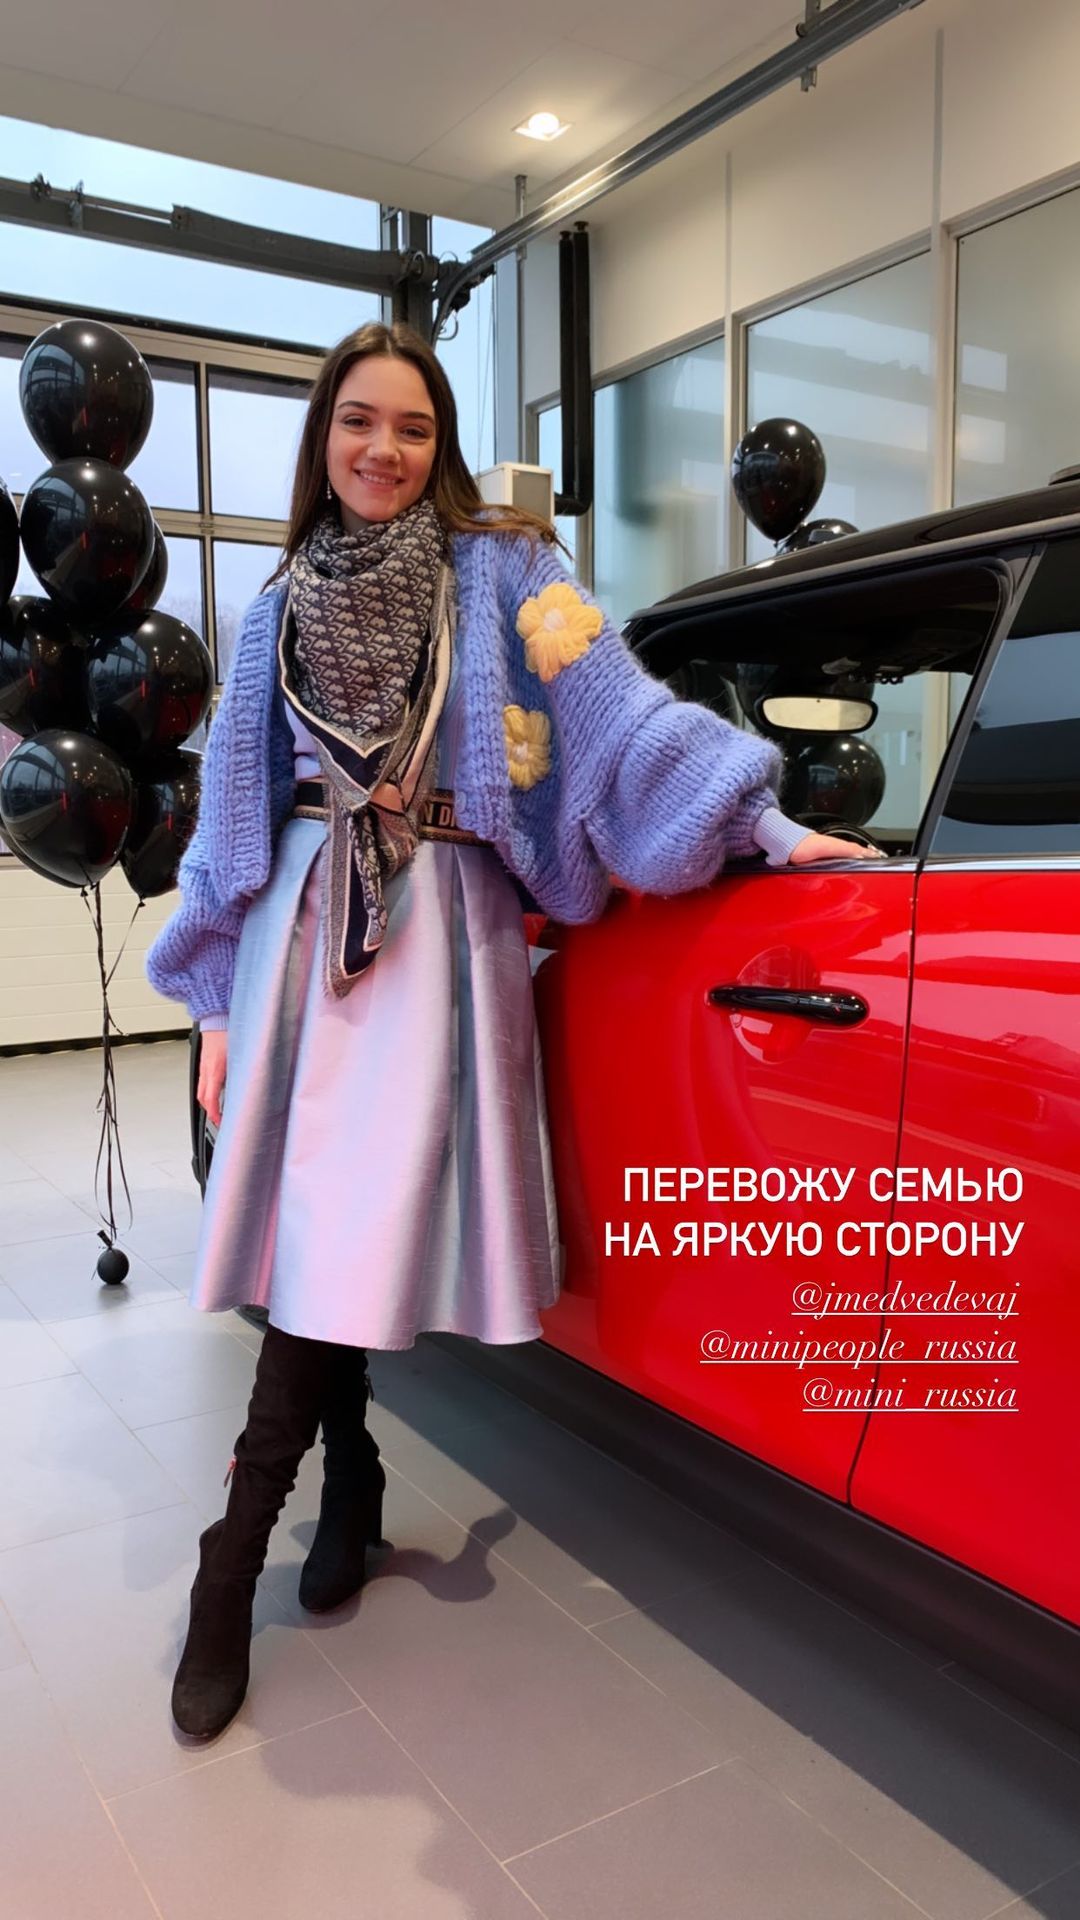 ⚡️Евгения Медведева купила Ламборгини Авентодор